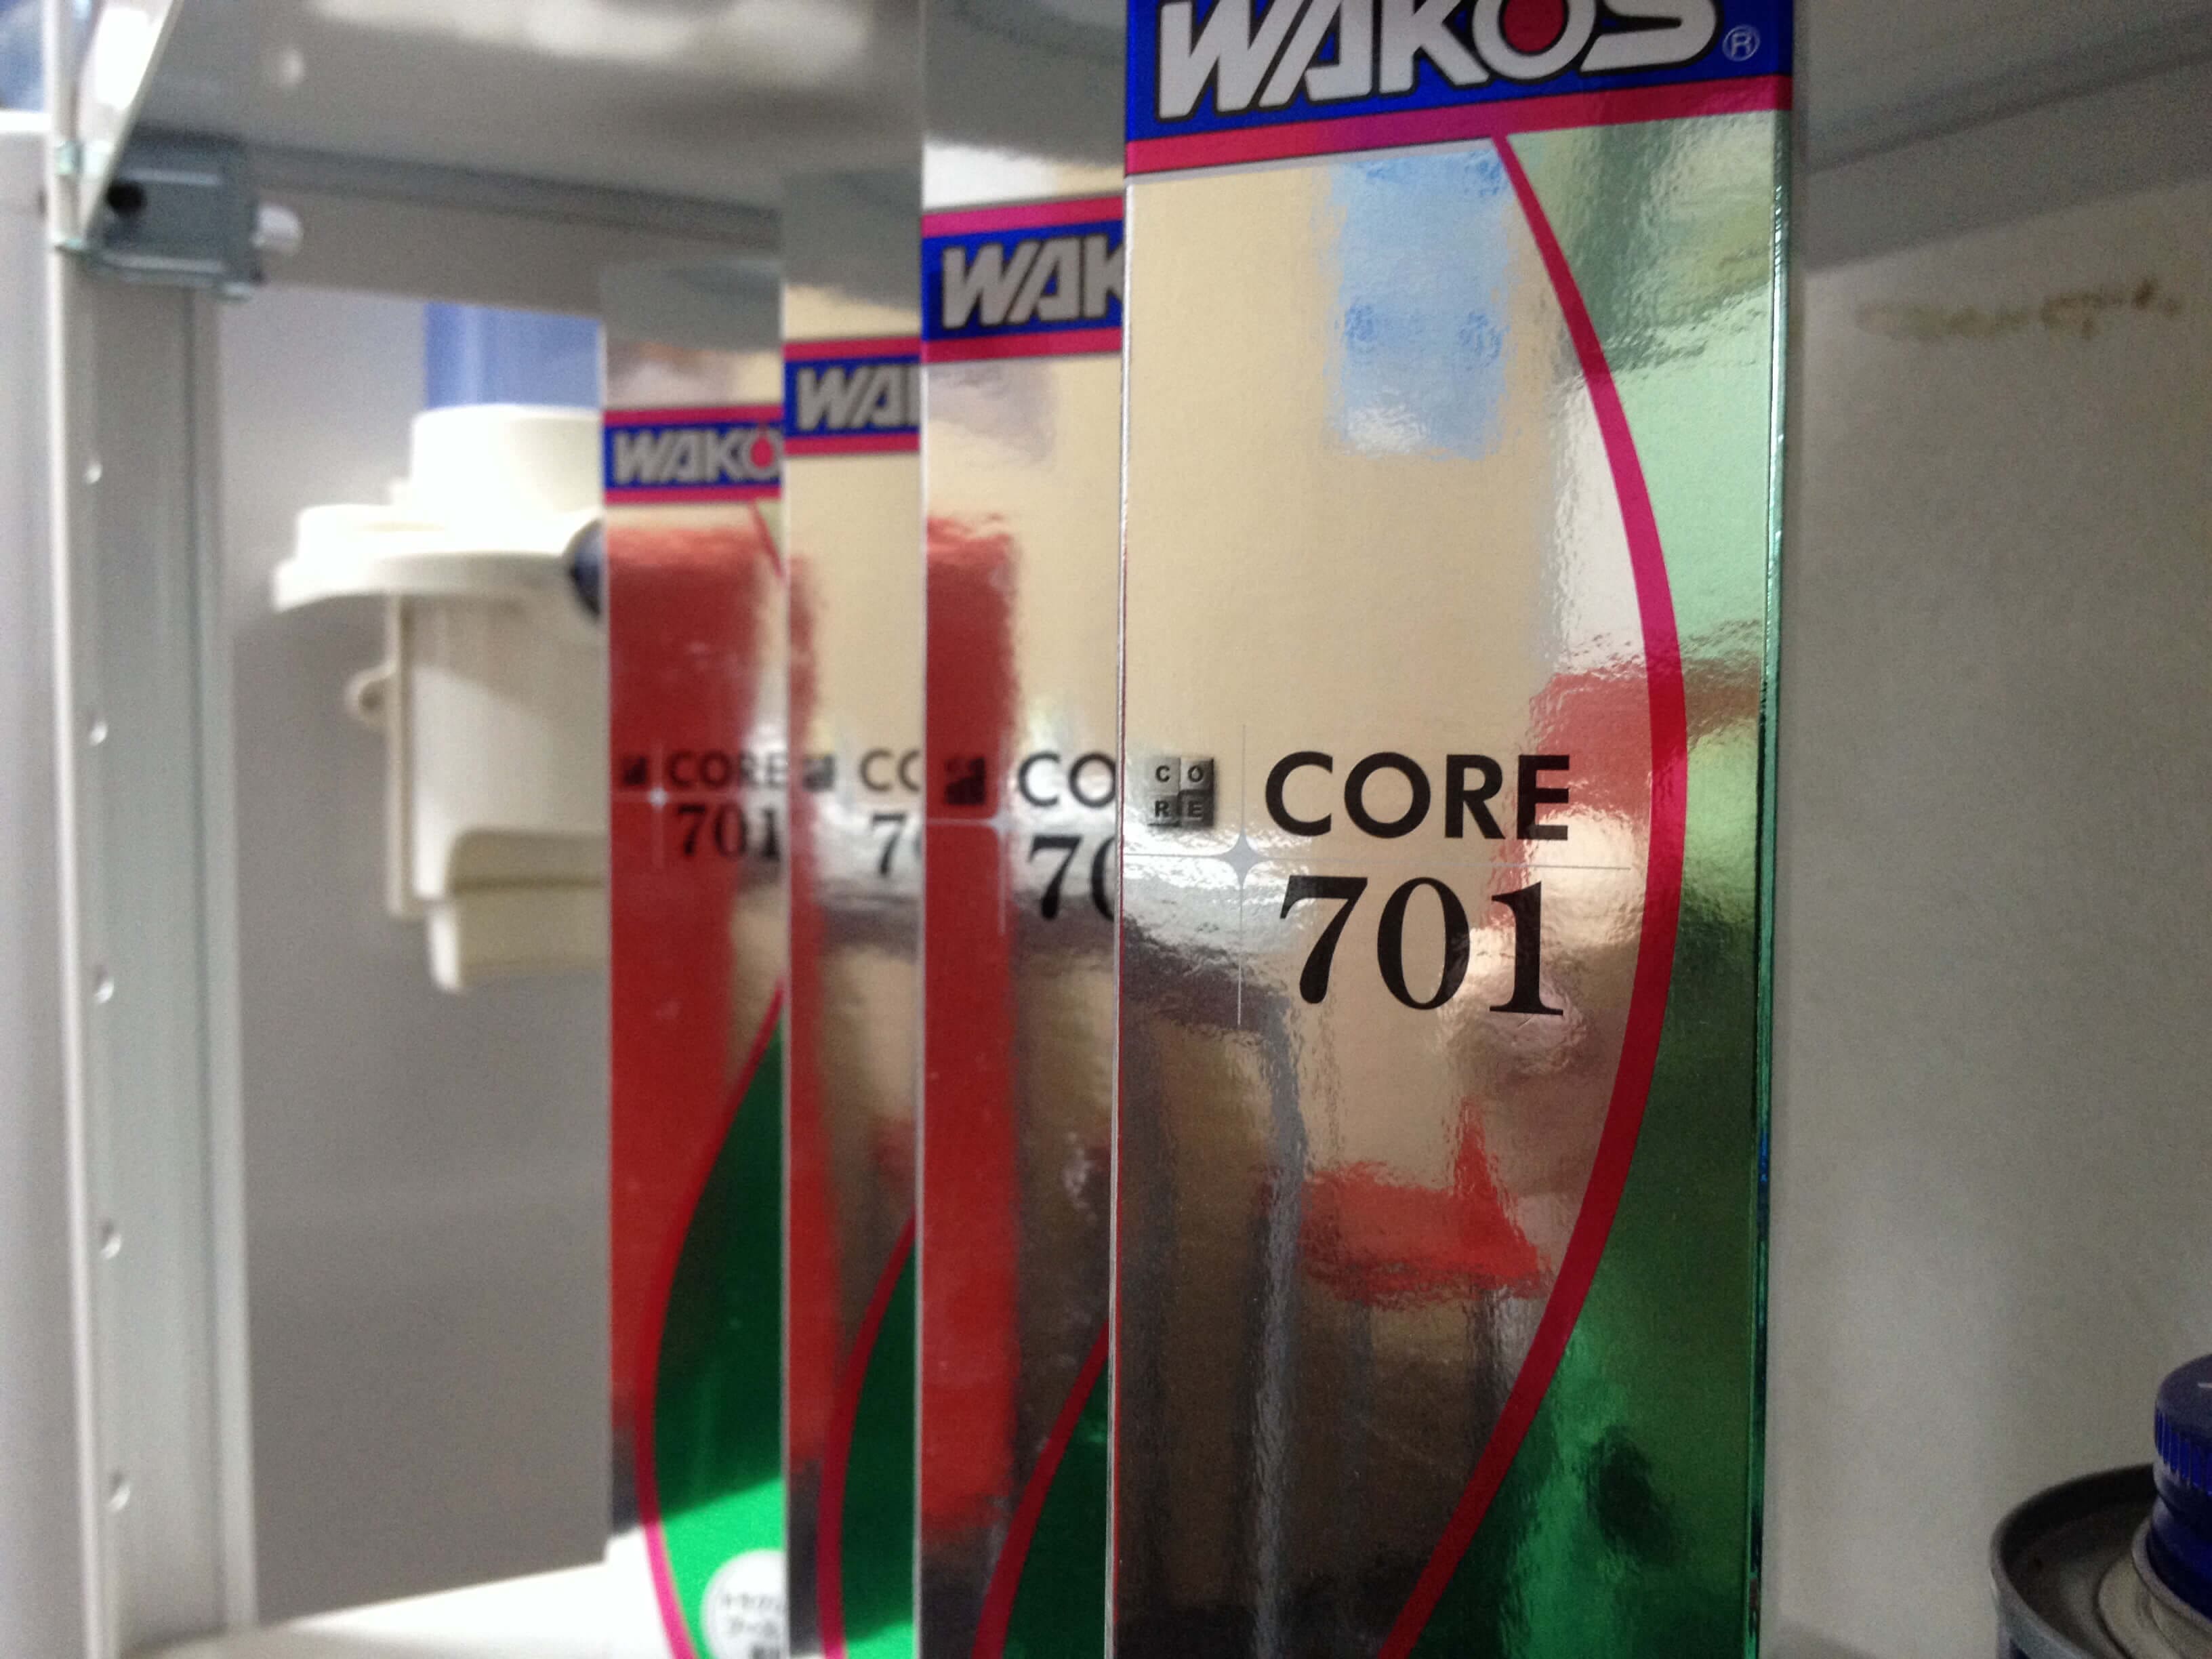 WAKO’S CR701 CORE701素早い変速により力強くスムーズな走りを実現する究極のATF用添加剤